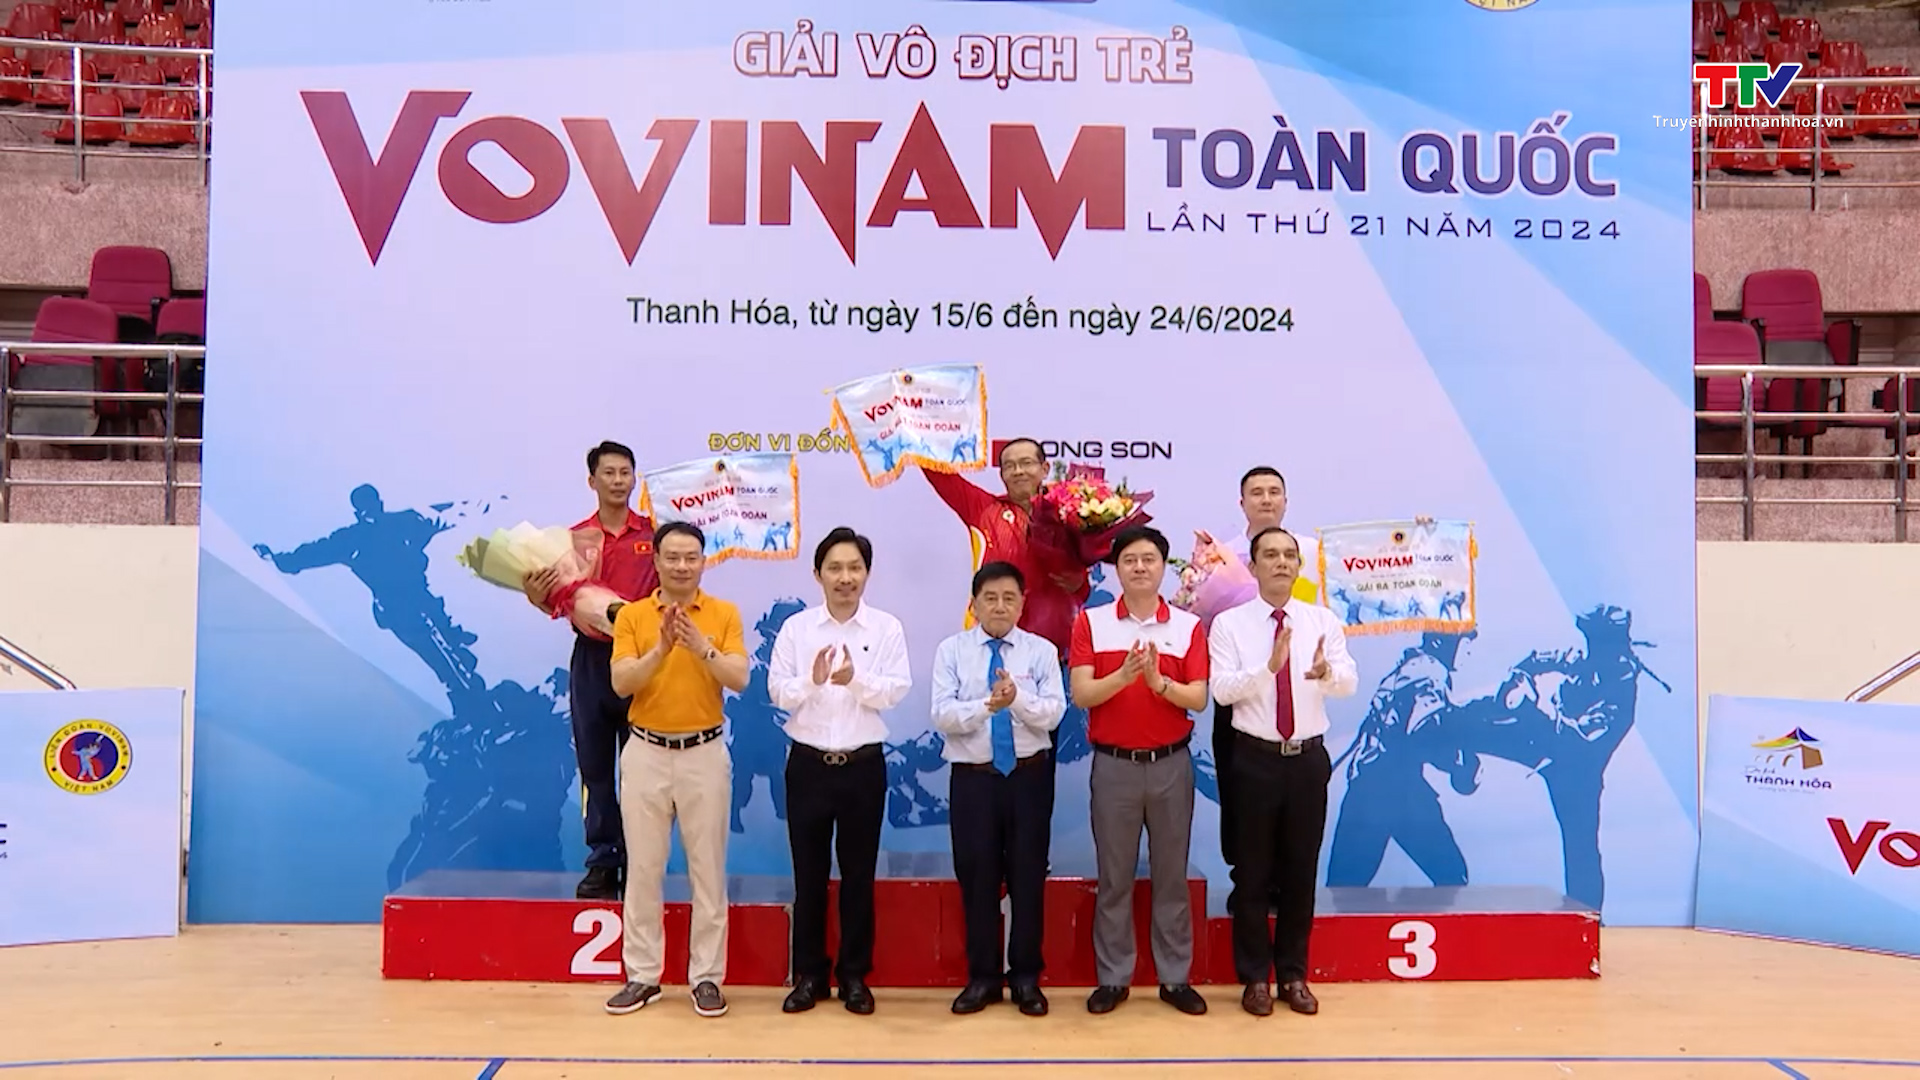 Thanh Hóa xếp giải thứ 3 toàn đoàn tại Giải vô địch trẻ Vovinam toàn quốc năm 2024 - Ảnh 3.